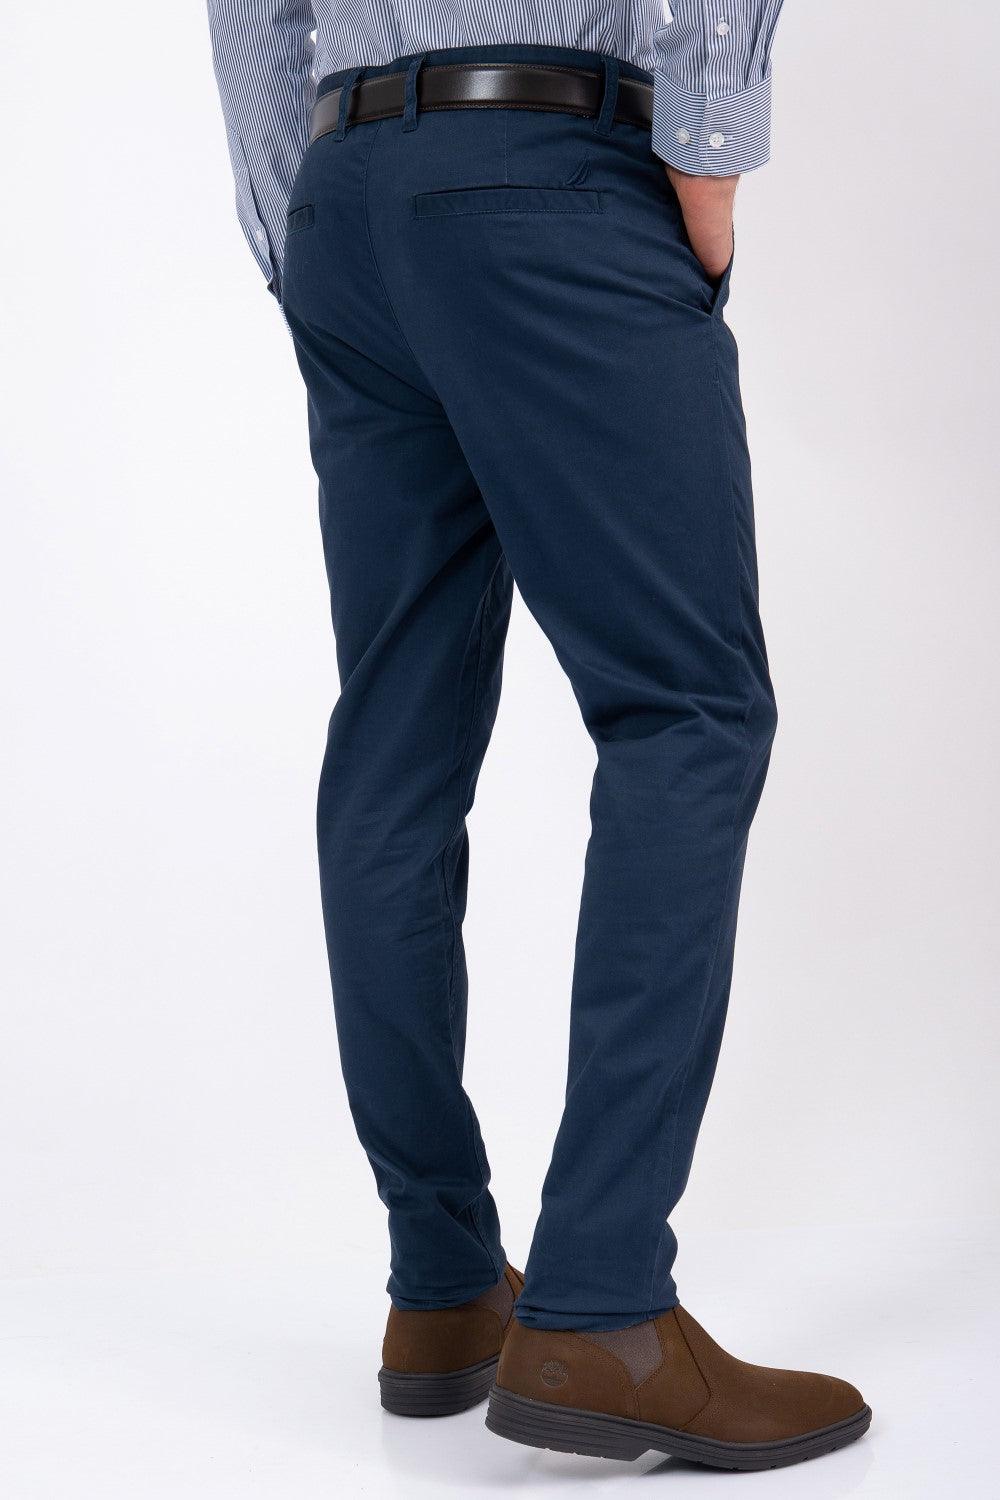 NAUTICA - מכנס CHINO צבע כחול - MASHBIR//365